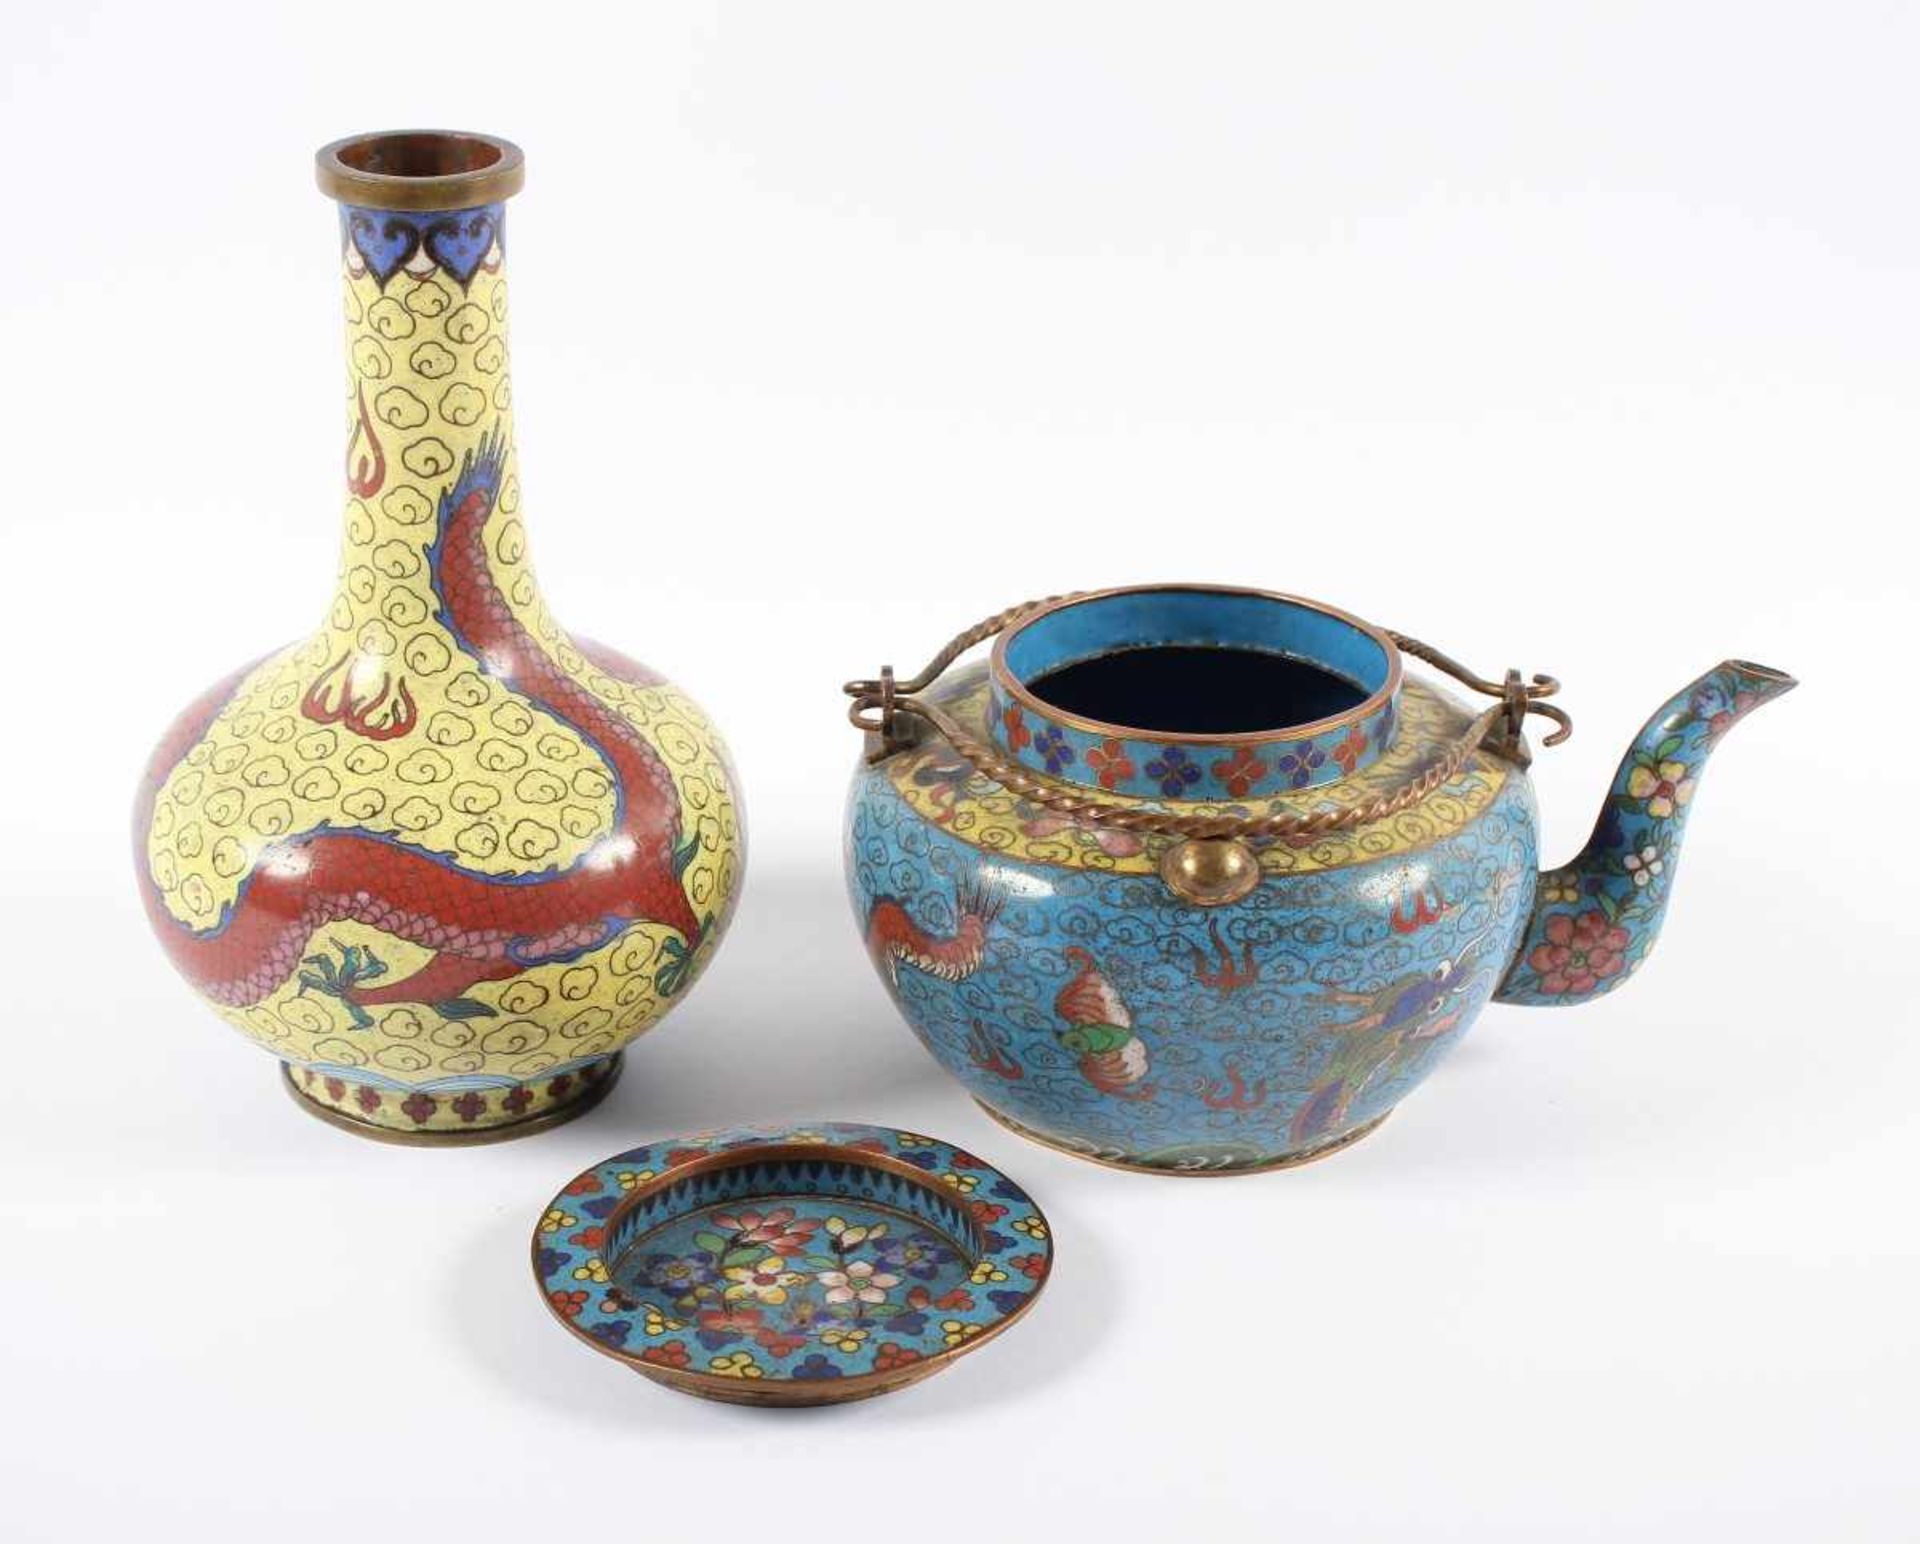 ZWEI CLOISONNÉ-OBJEKTE, Vase und Teekanne im farbigem Emailcloisonné dekoriert, H bis 18, besch. - Image 2 of 3